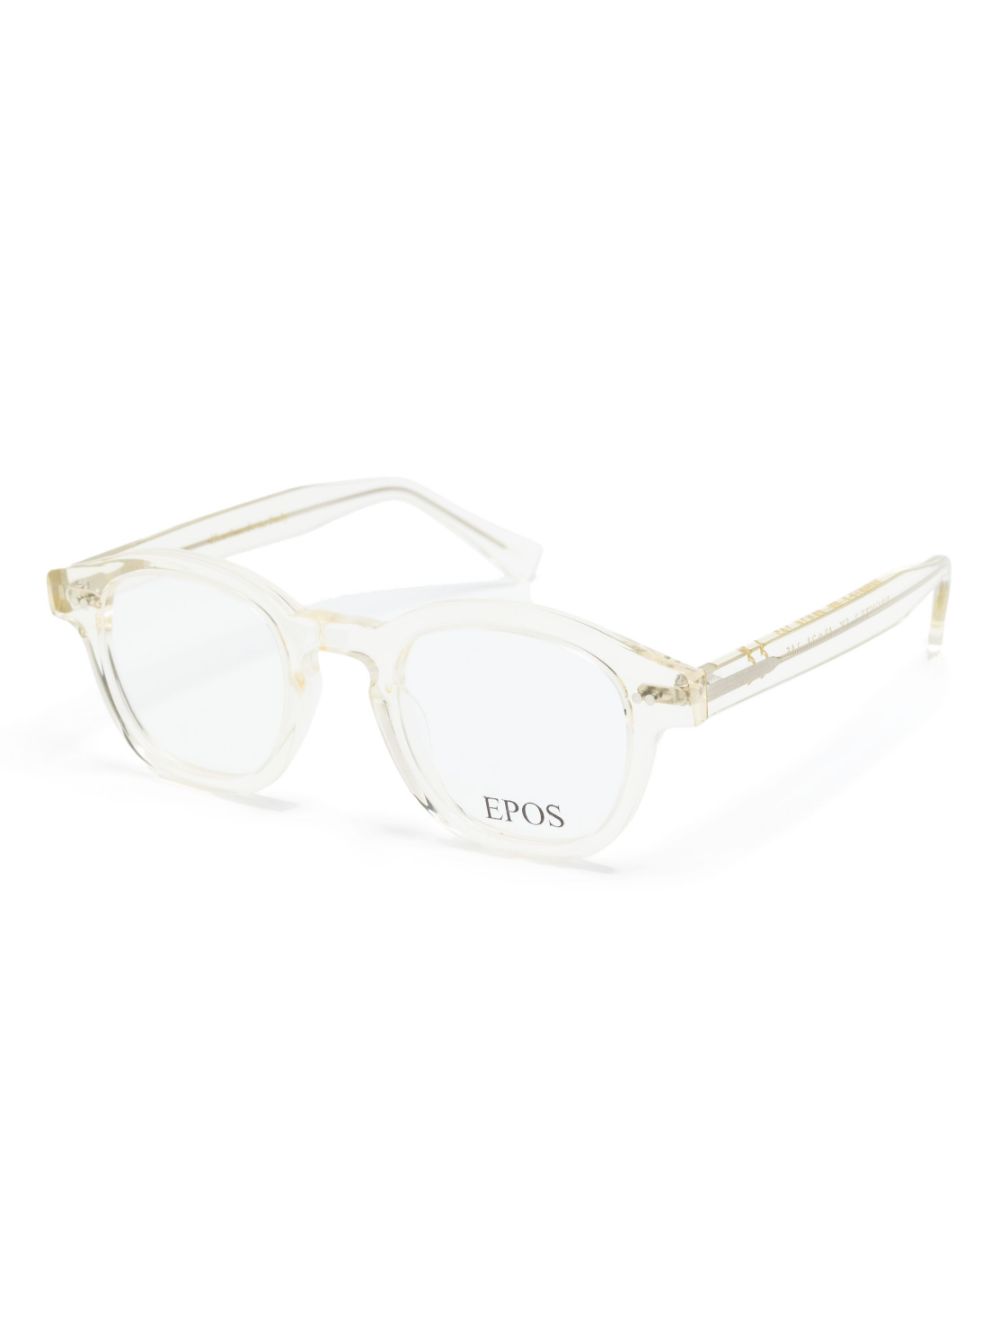 Epos Bronte bril met rond montuur - Geel